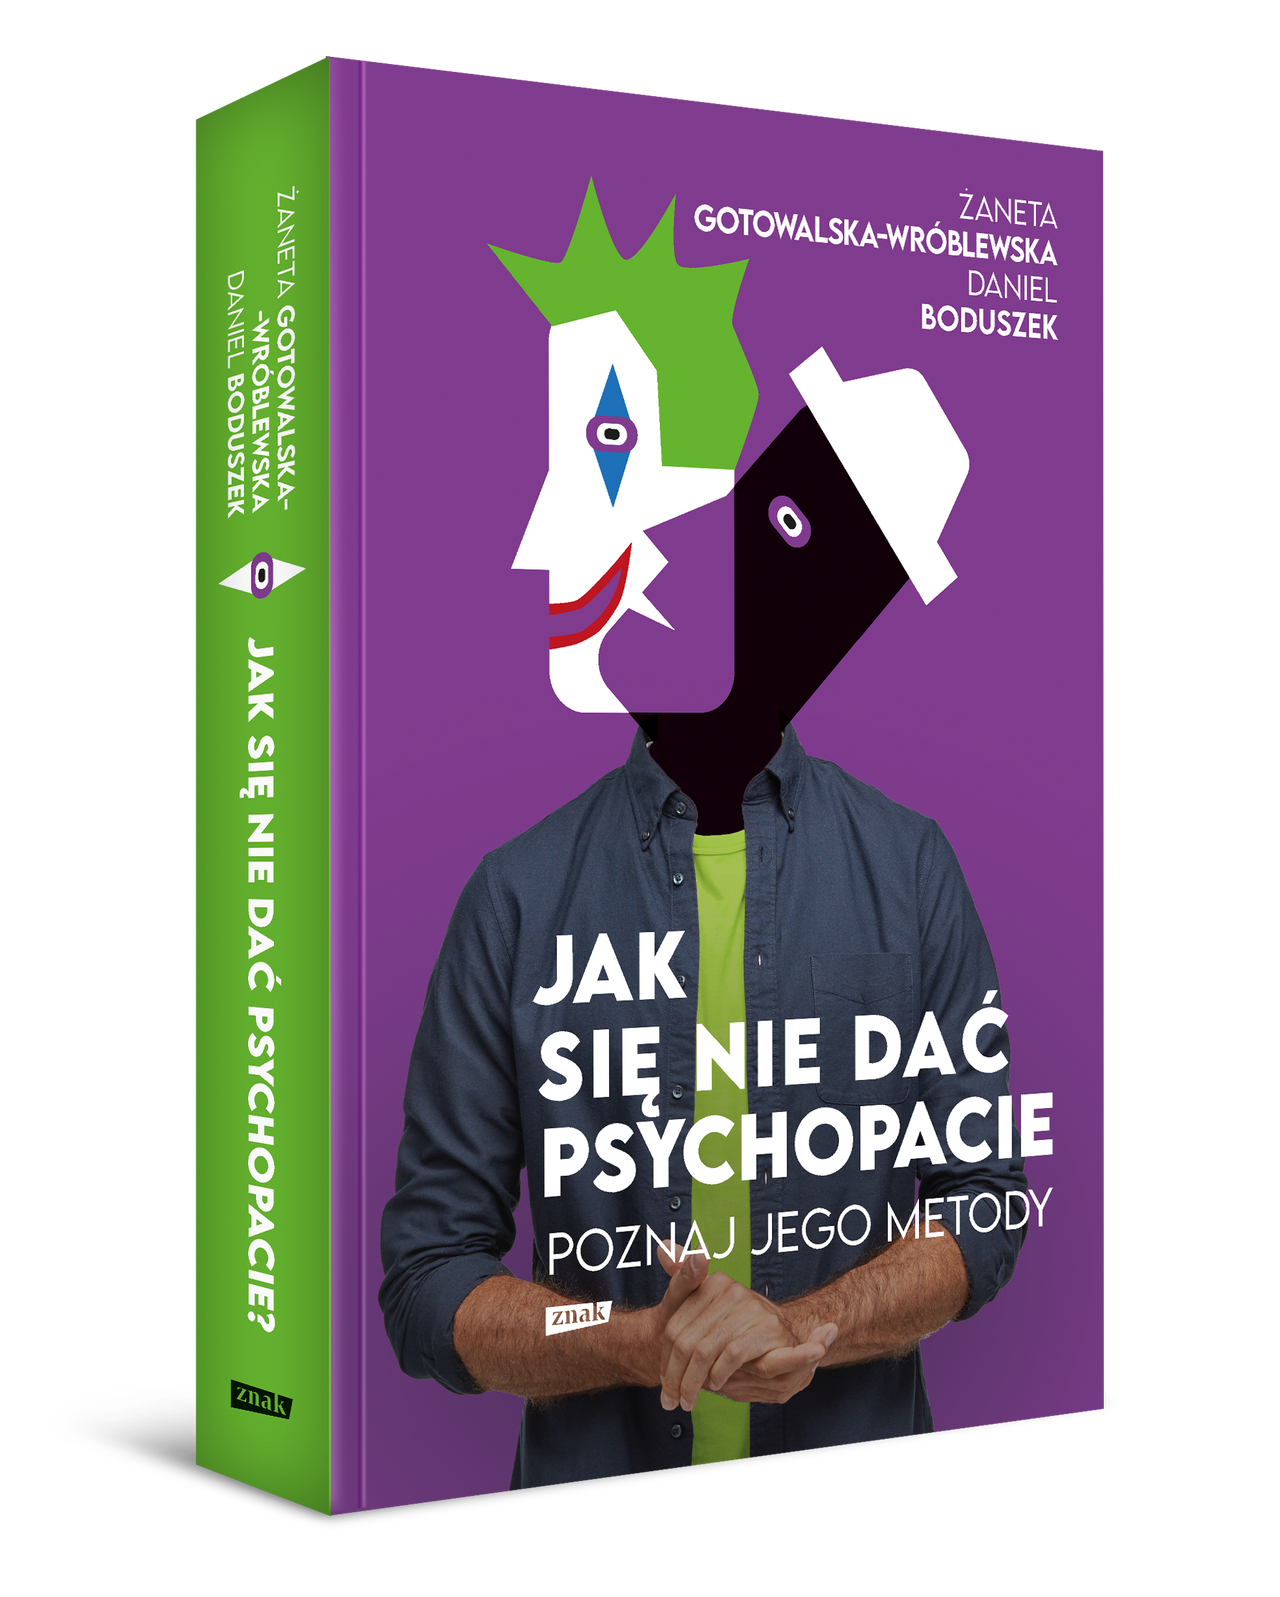 Książka "Jak się nie dać psychopacie? Poznaj jego metody". Autorzy: Daniel Boduszek oraz Żaneta Gotowalska-Wróblewska